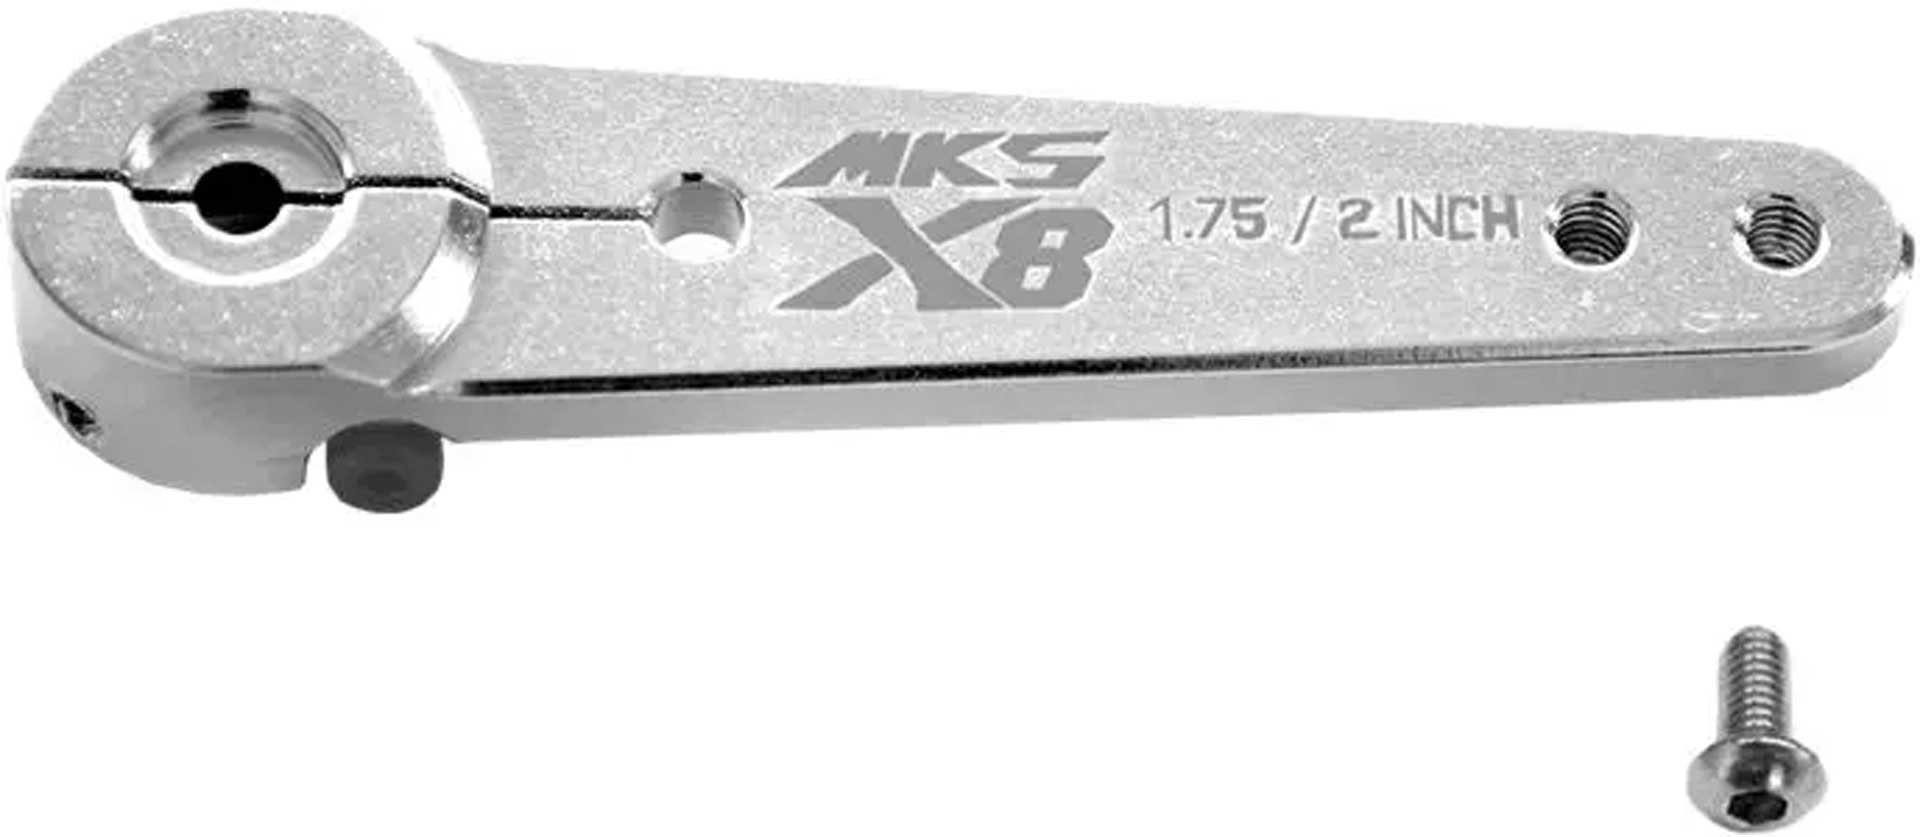 MKS Palonnier en croix   unilatérale métal M3 - L 1.75/2 in - HBL8X0, HBL380